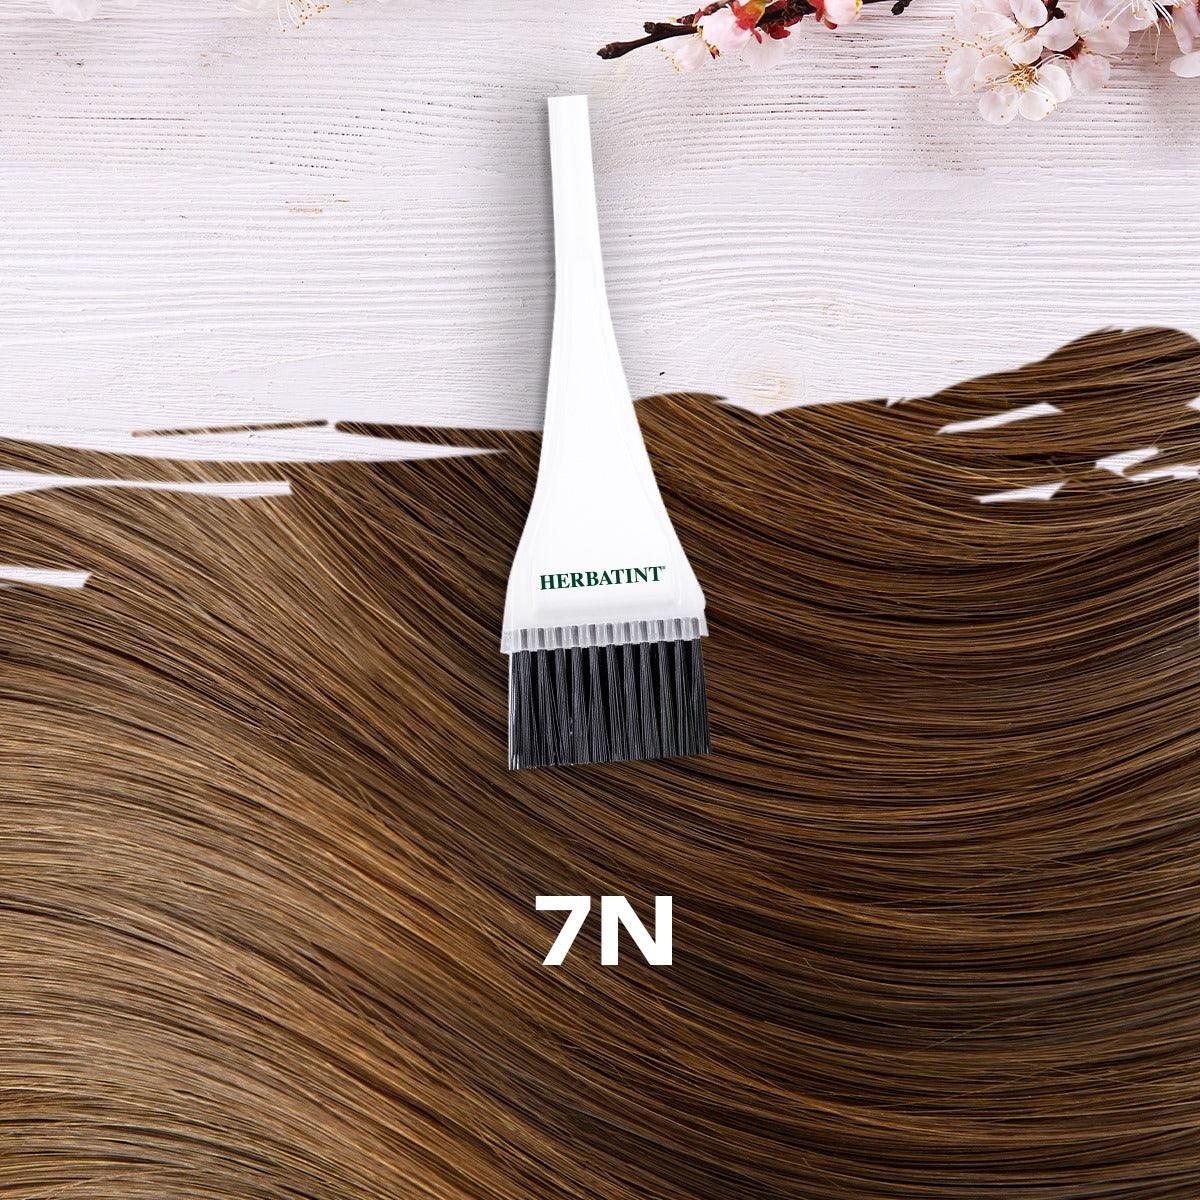 צבע טבעי לשיער גוון בלונד 7N | הרבטינט - Herbatint - פריקפוא